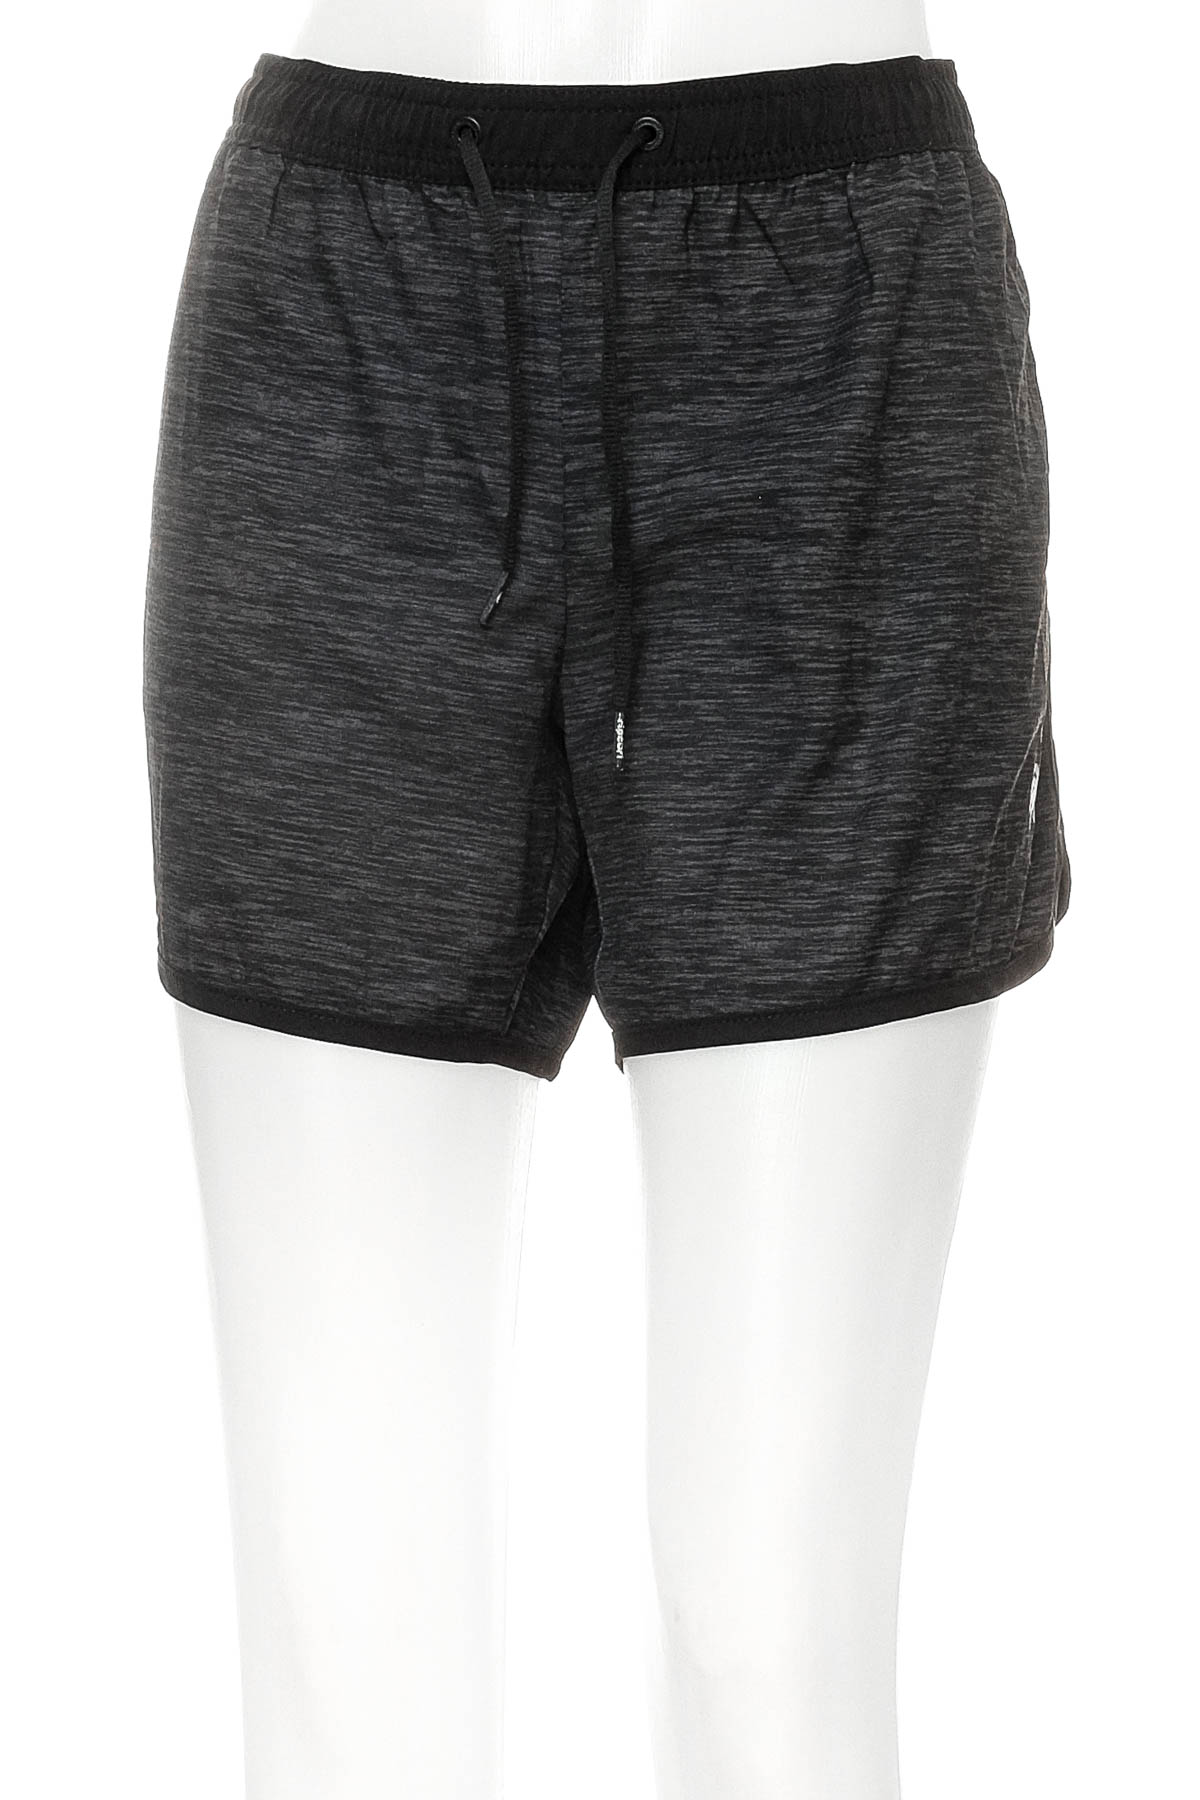 Women's shorts - RIPCURL - 0